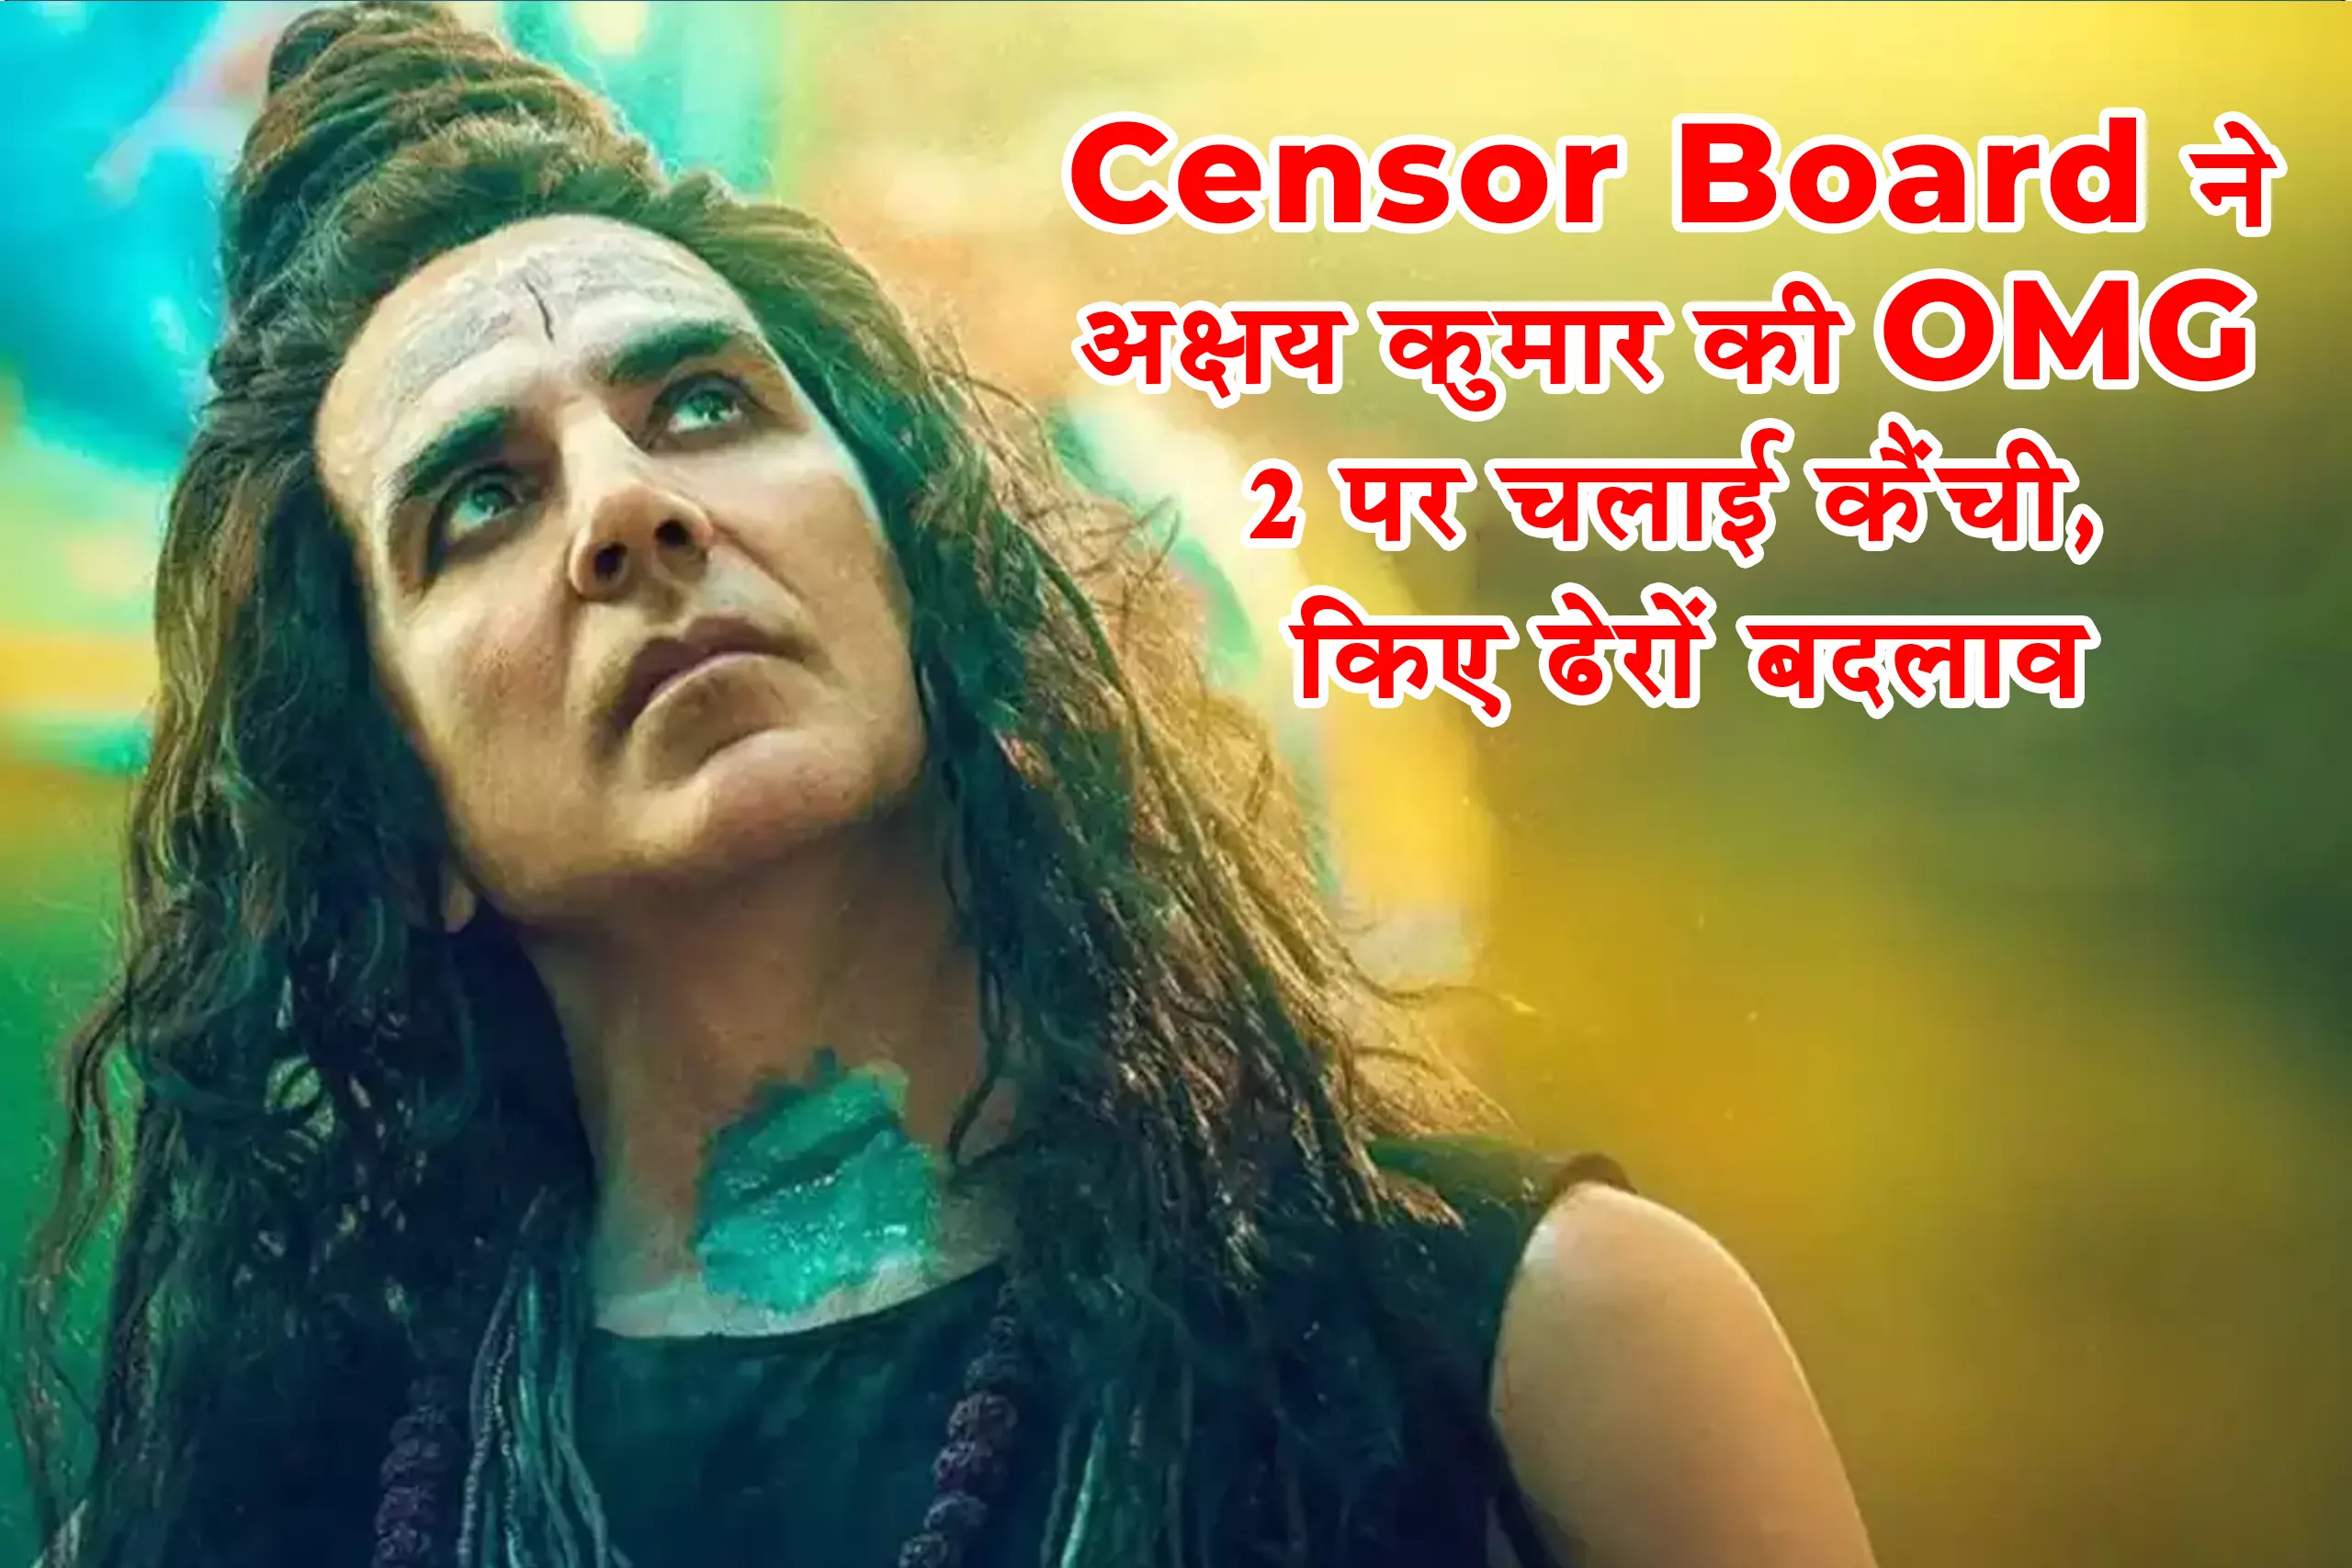 Censor Board ने अक्षय कुमार की OMG 2 पर चलाई कैंची, किए ढेरों बदलाव